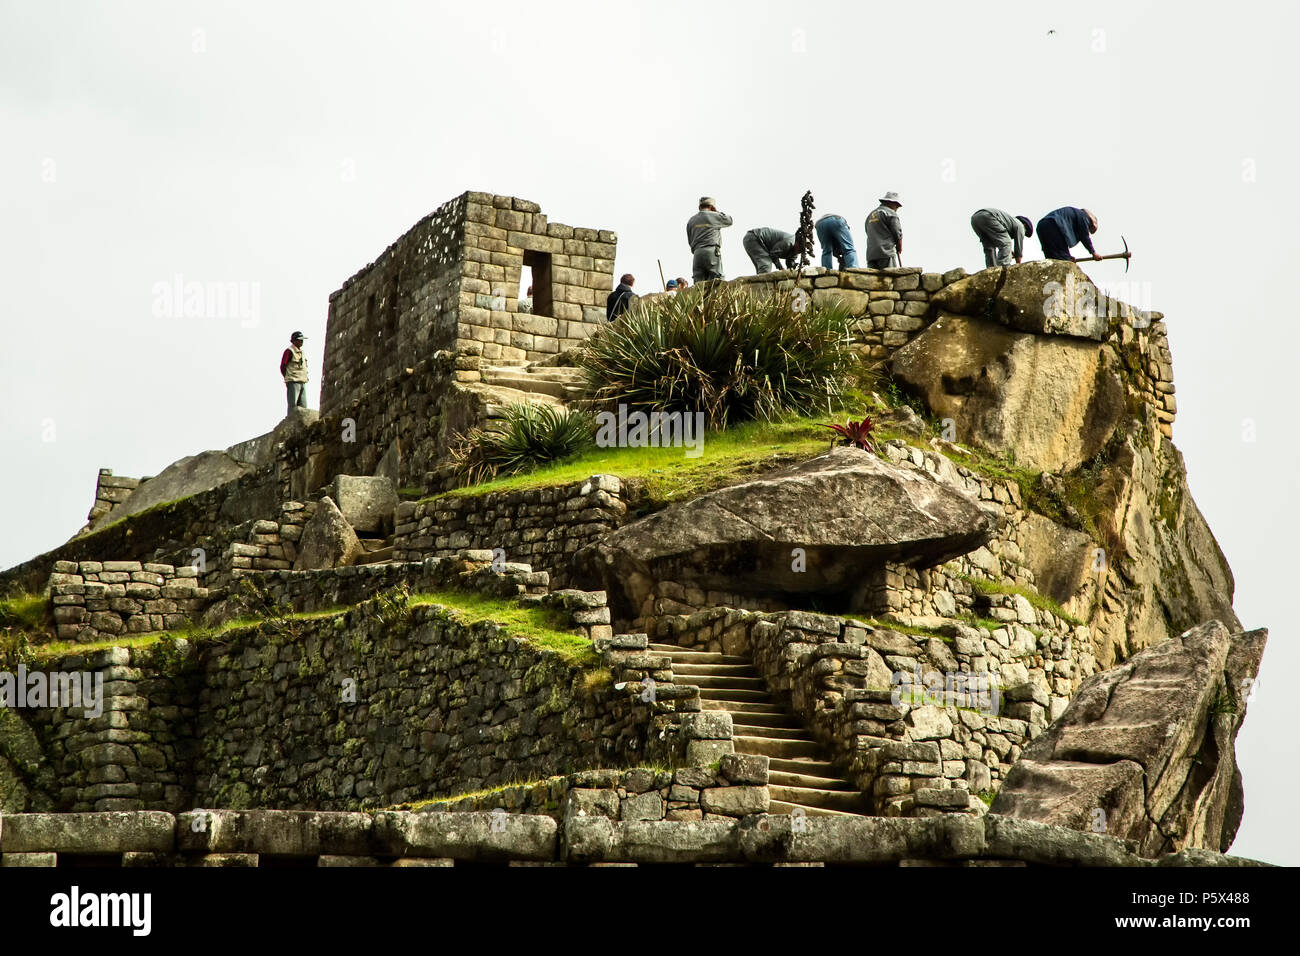 Les archéologues au travail, les ruines Inca de Machu Picchu, près de Aguas Calientes, alias Machu Picchu Pueblo, Cusco, Pérou Banque D'Images